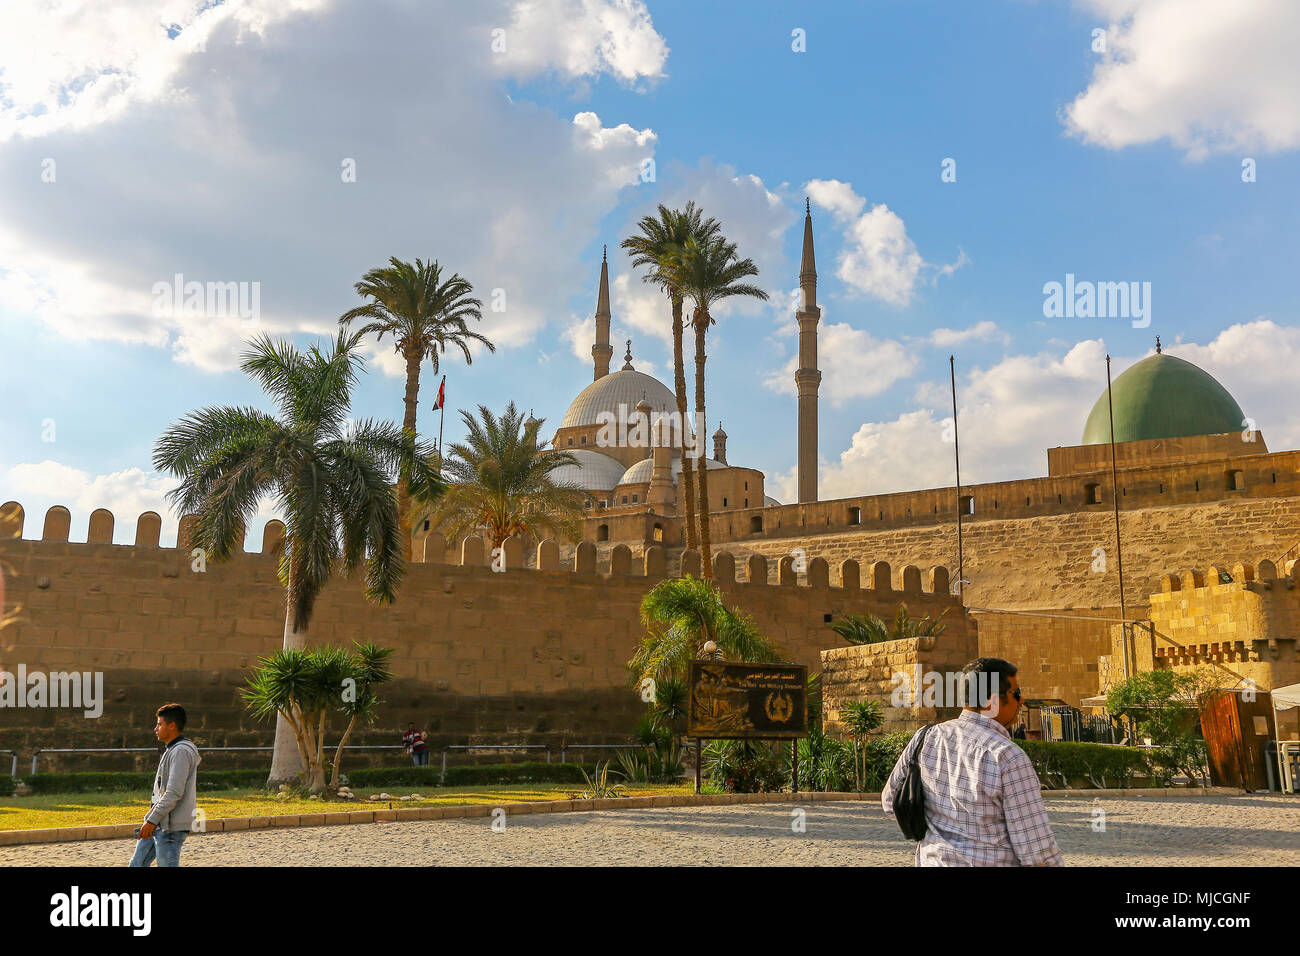 Die Zitadelle von Saladin von Kairo über mokattam Hügel in der Nähe des Stadtzentrum, ist eine mittelalterliche islamische Festung in Kairo, Ägypten, Afrika Stockfoto